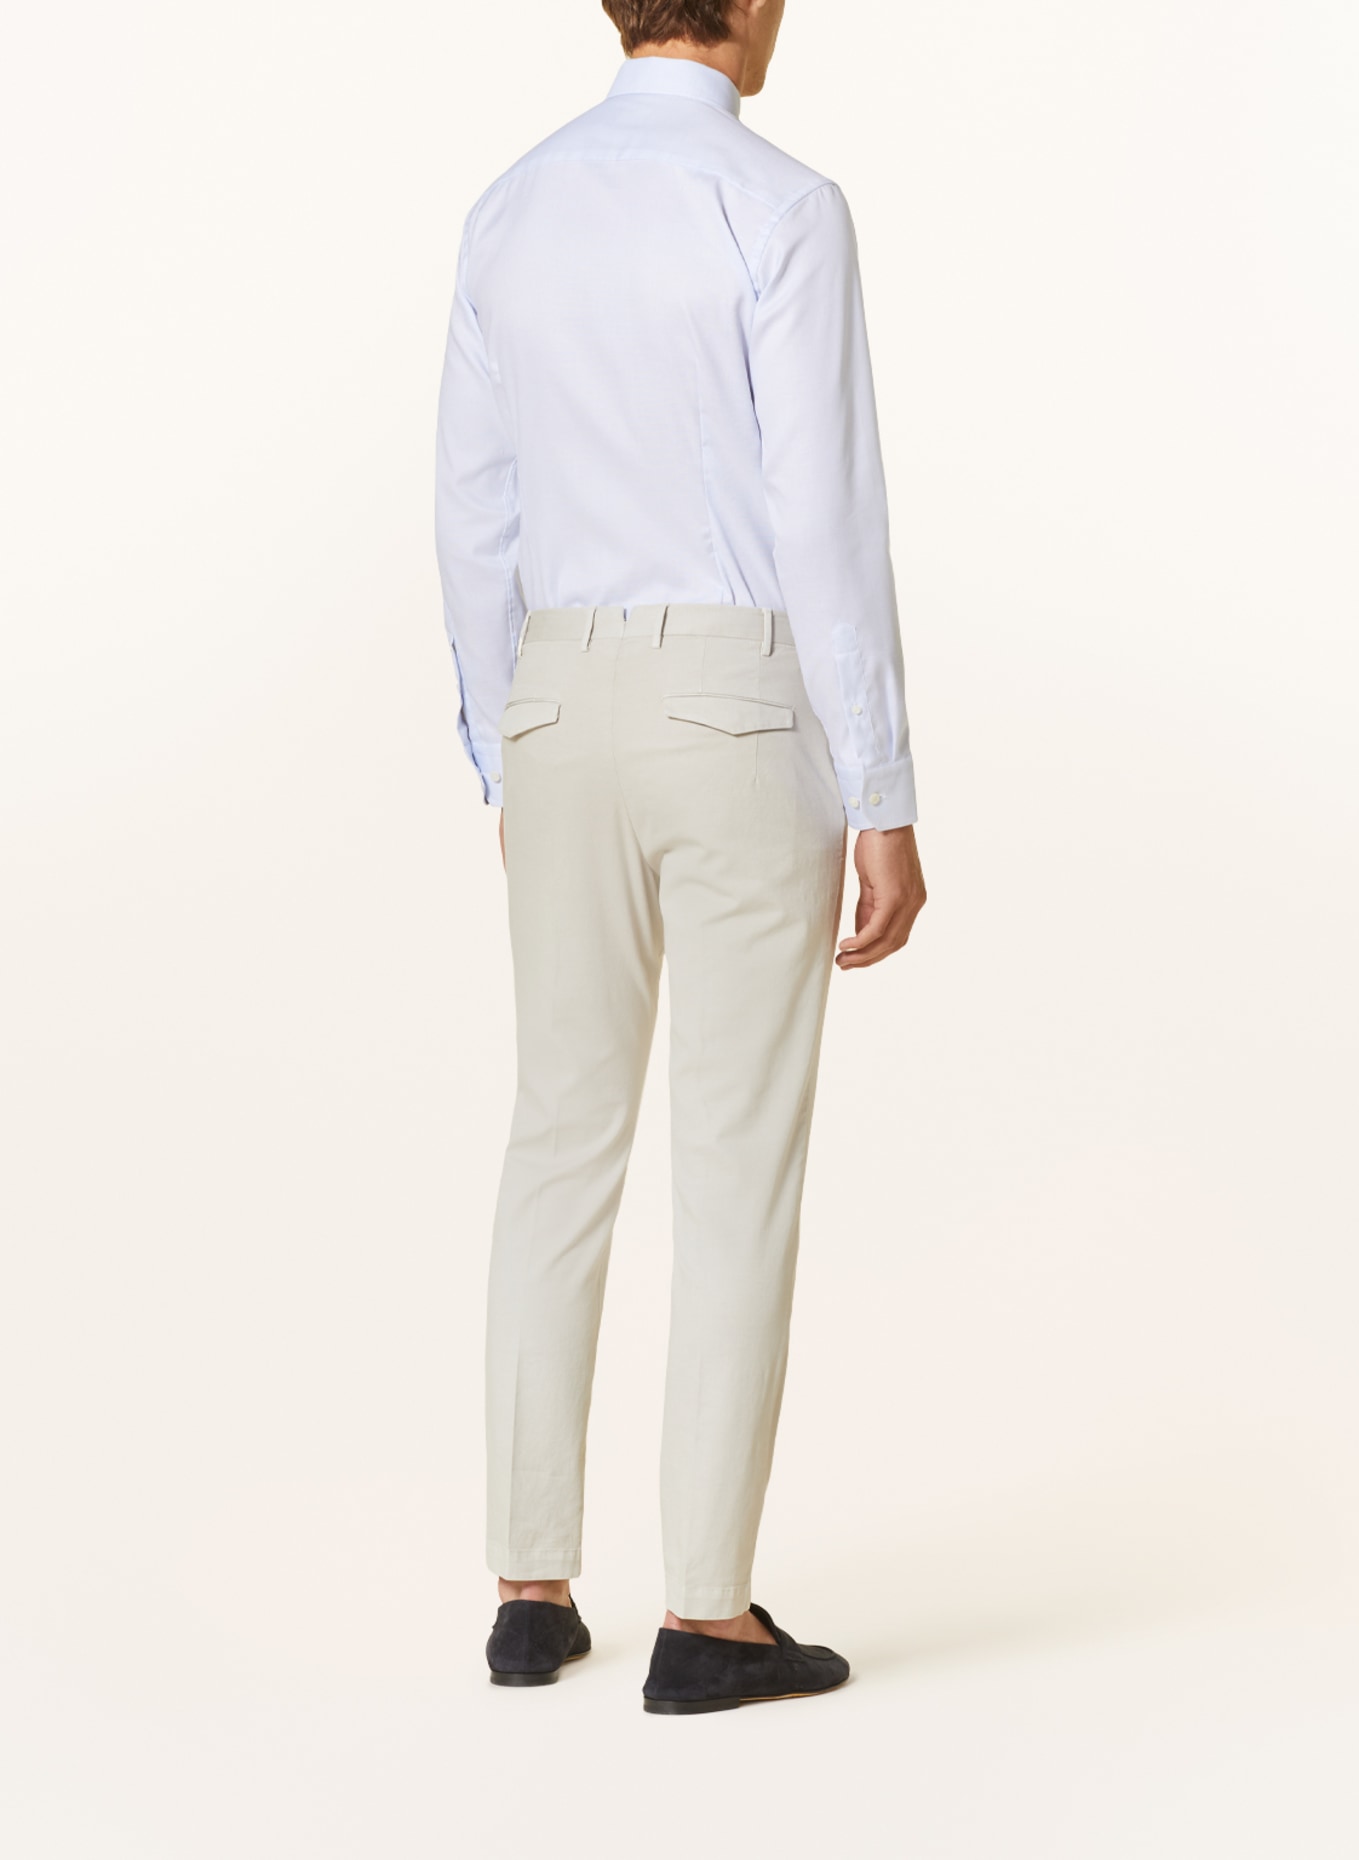 ETON Piqué shirt slim fit, Color: LIGHT BLUE (Image 3)